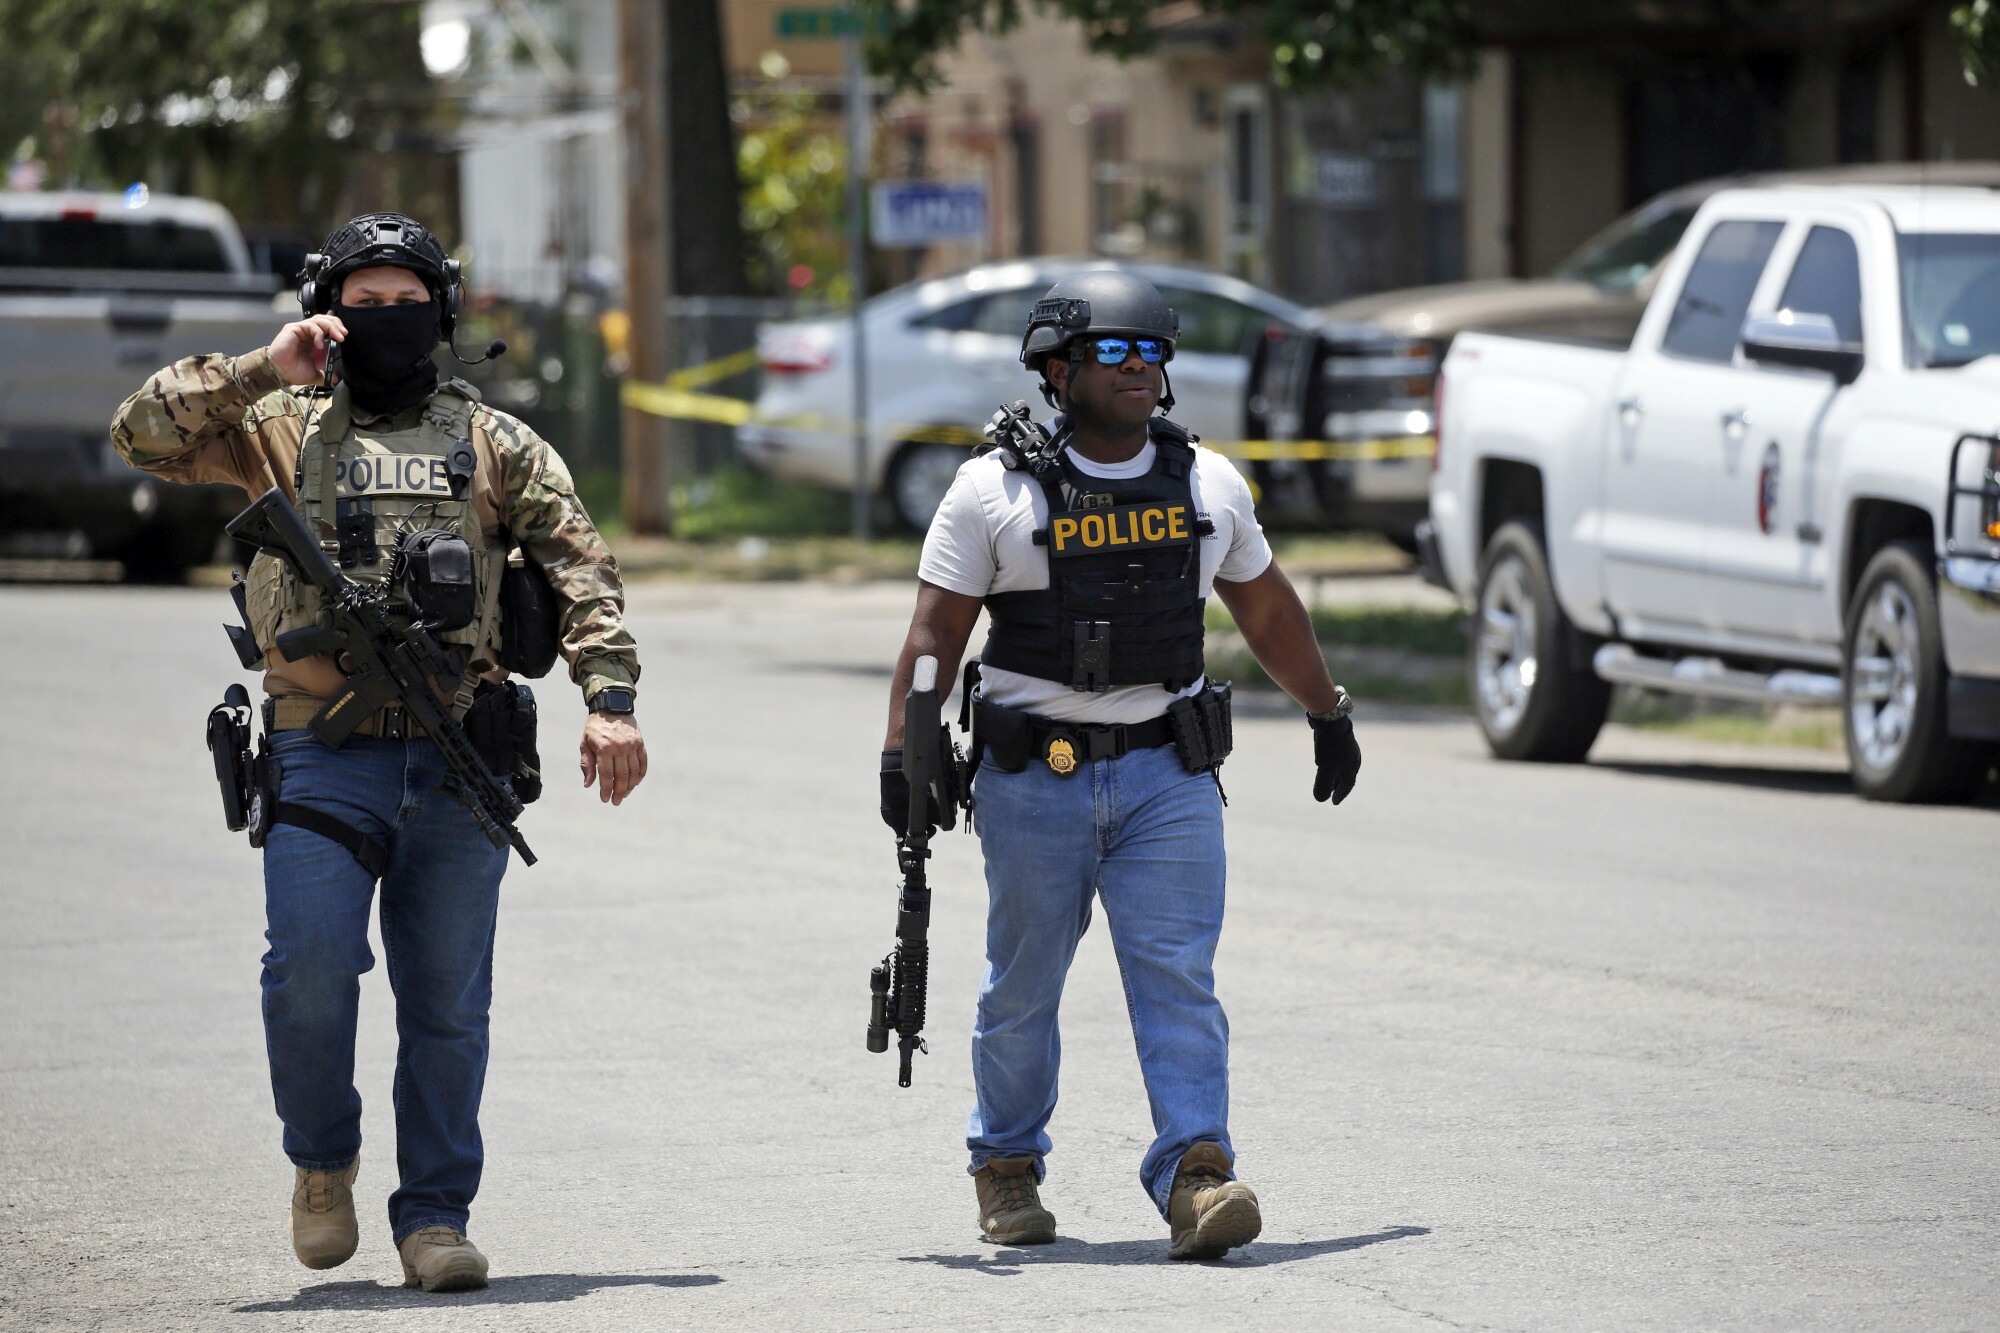 Zwei bewaffnete Personen mit Westen, auf denen die Aufschrift „Polizei“ steht, gehen auf einer Straße 